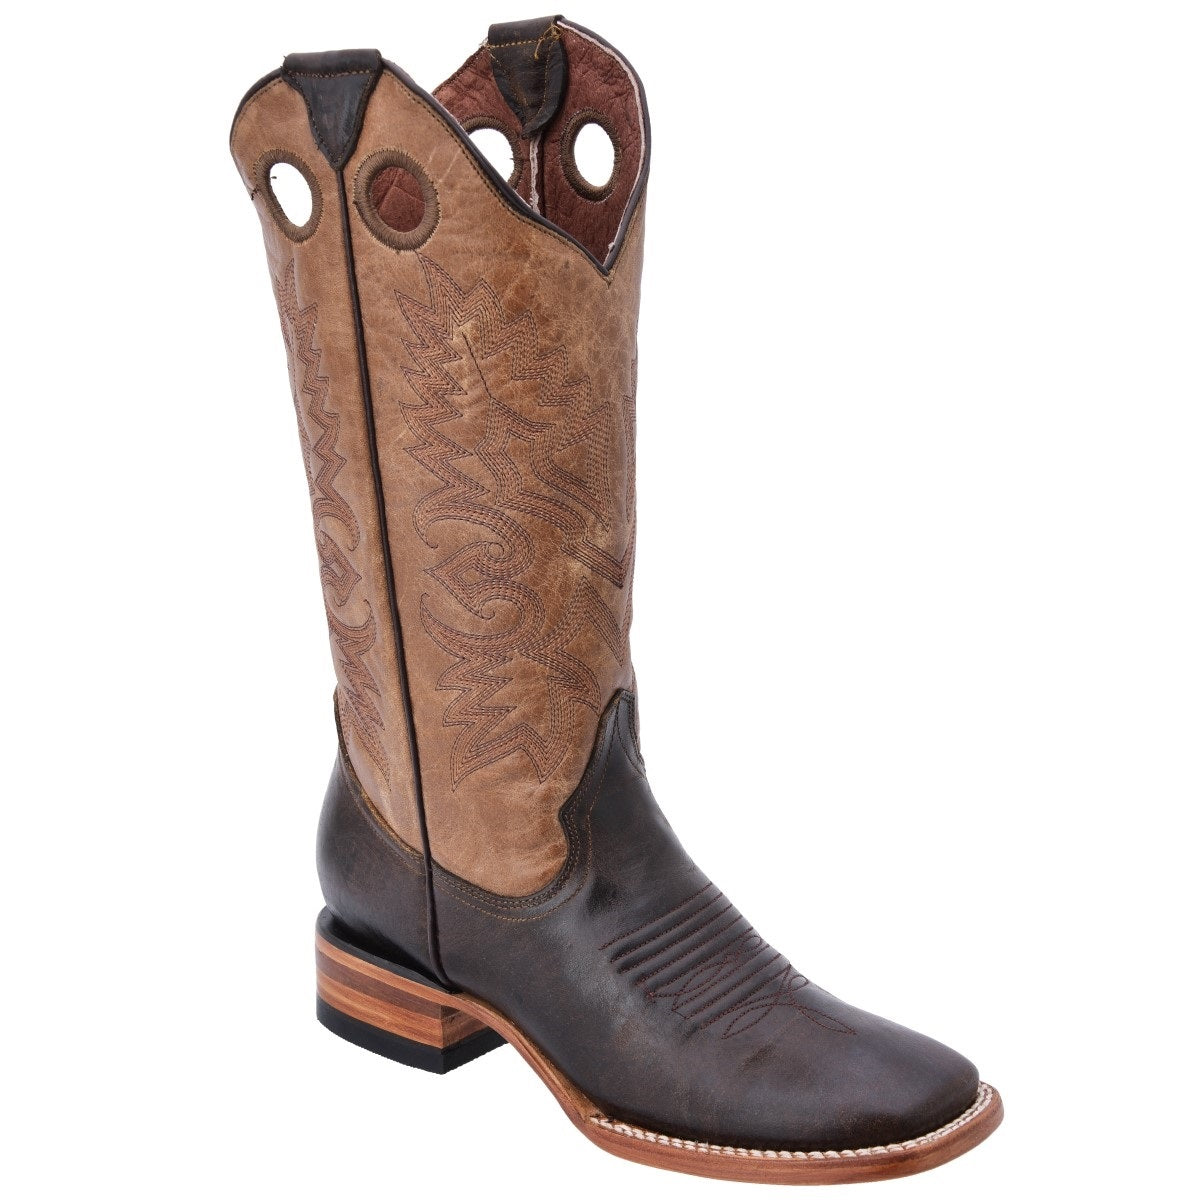 Botas Vaqueras TM-WD0534 - Western Boots